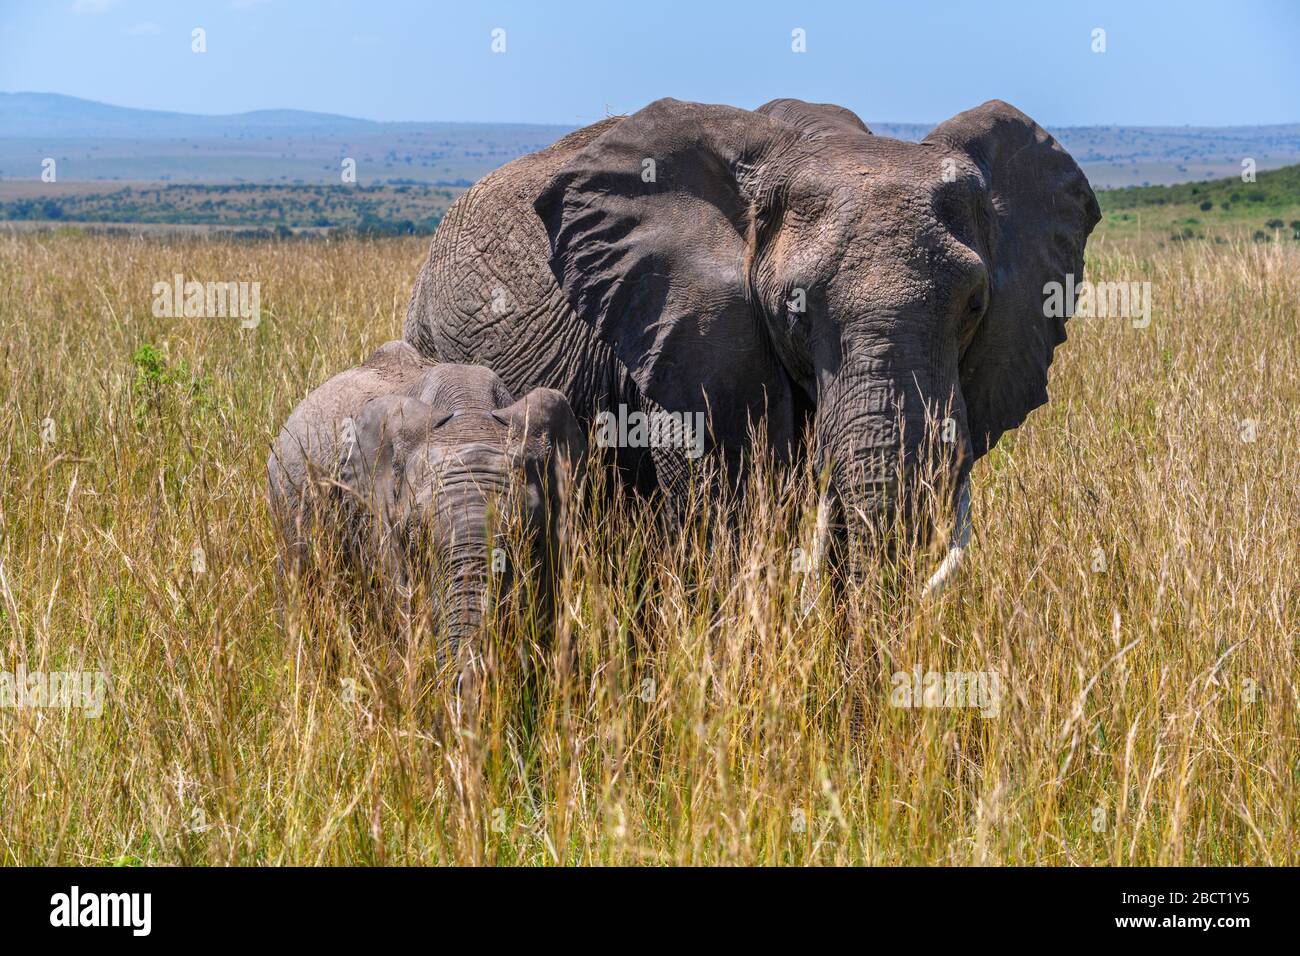 Éléphant de brousse africain (Loxodonta africana). Un éléphant d'Afrique avec du veau dans l'herbe longue, réserve nationale de Masai Mara, Kenya, Afrique de l'est Banque D'Images